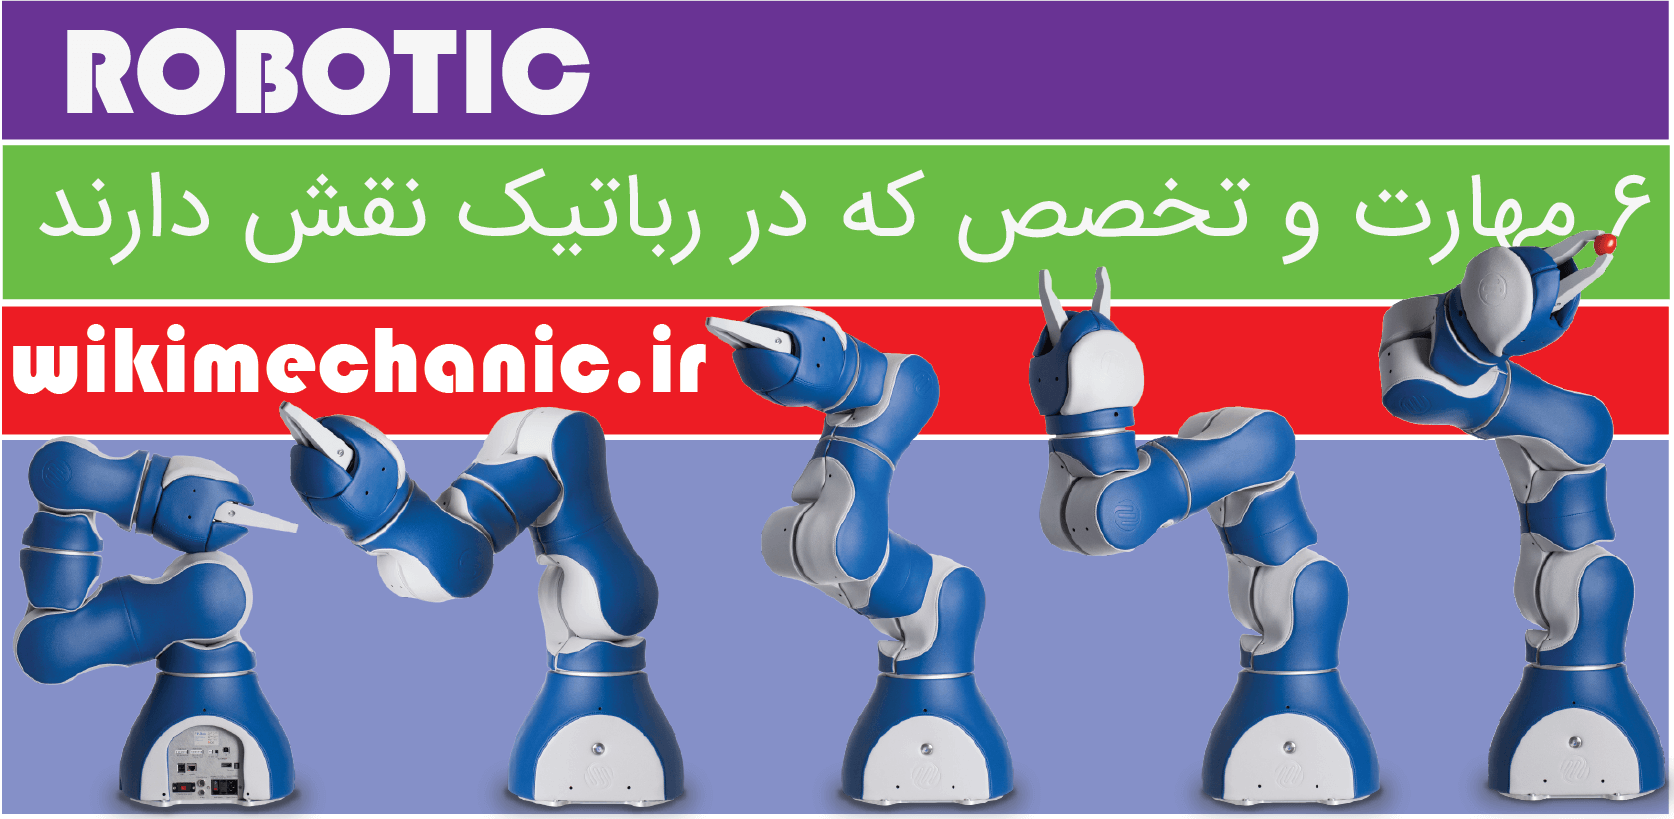 آموزش رباتیک - رباتیک چیست